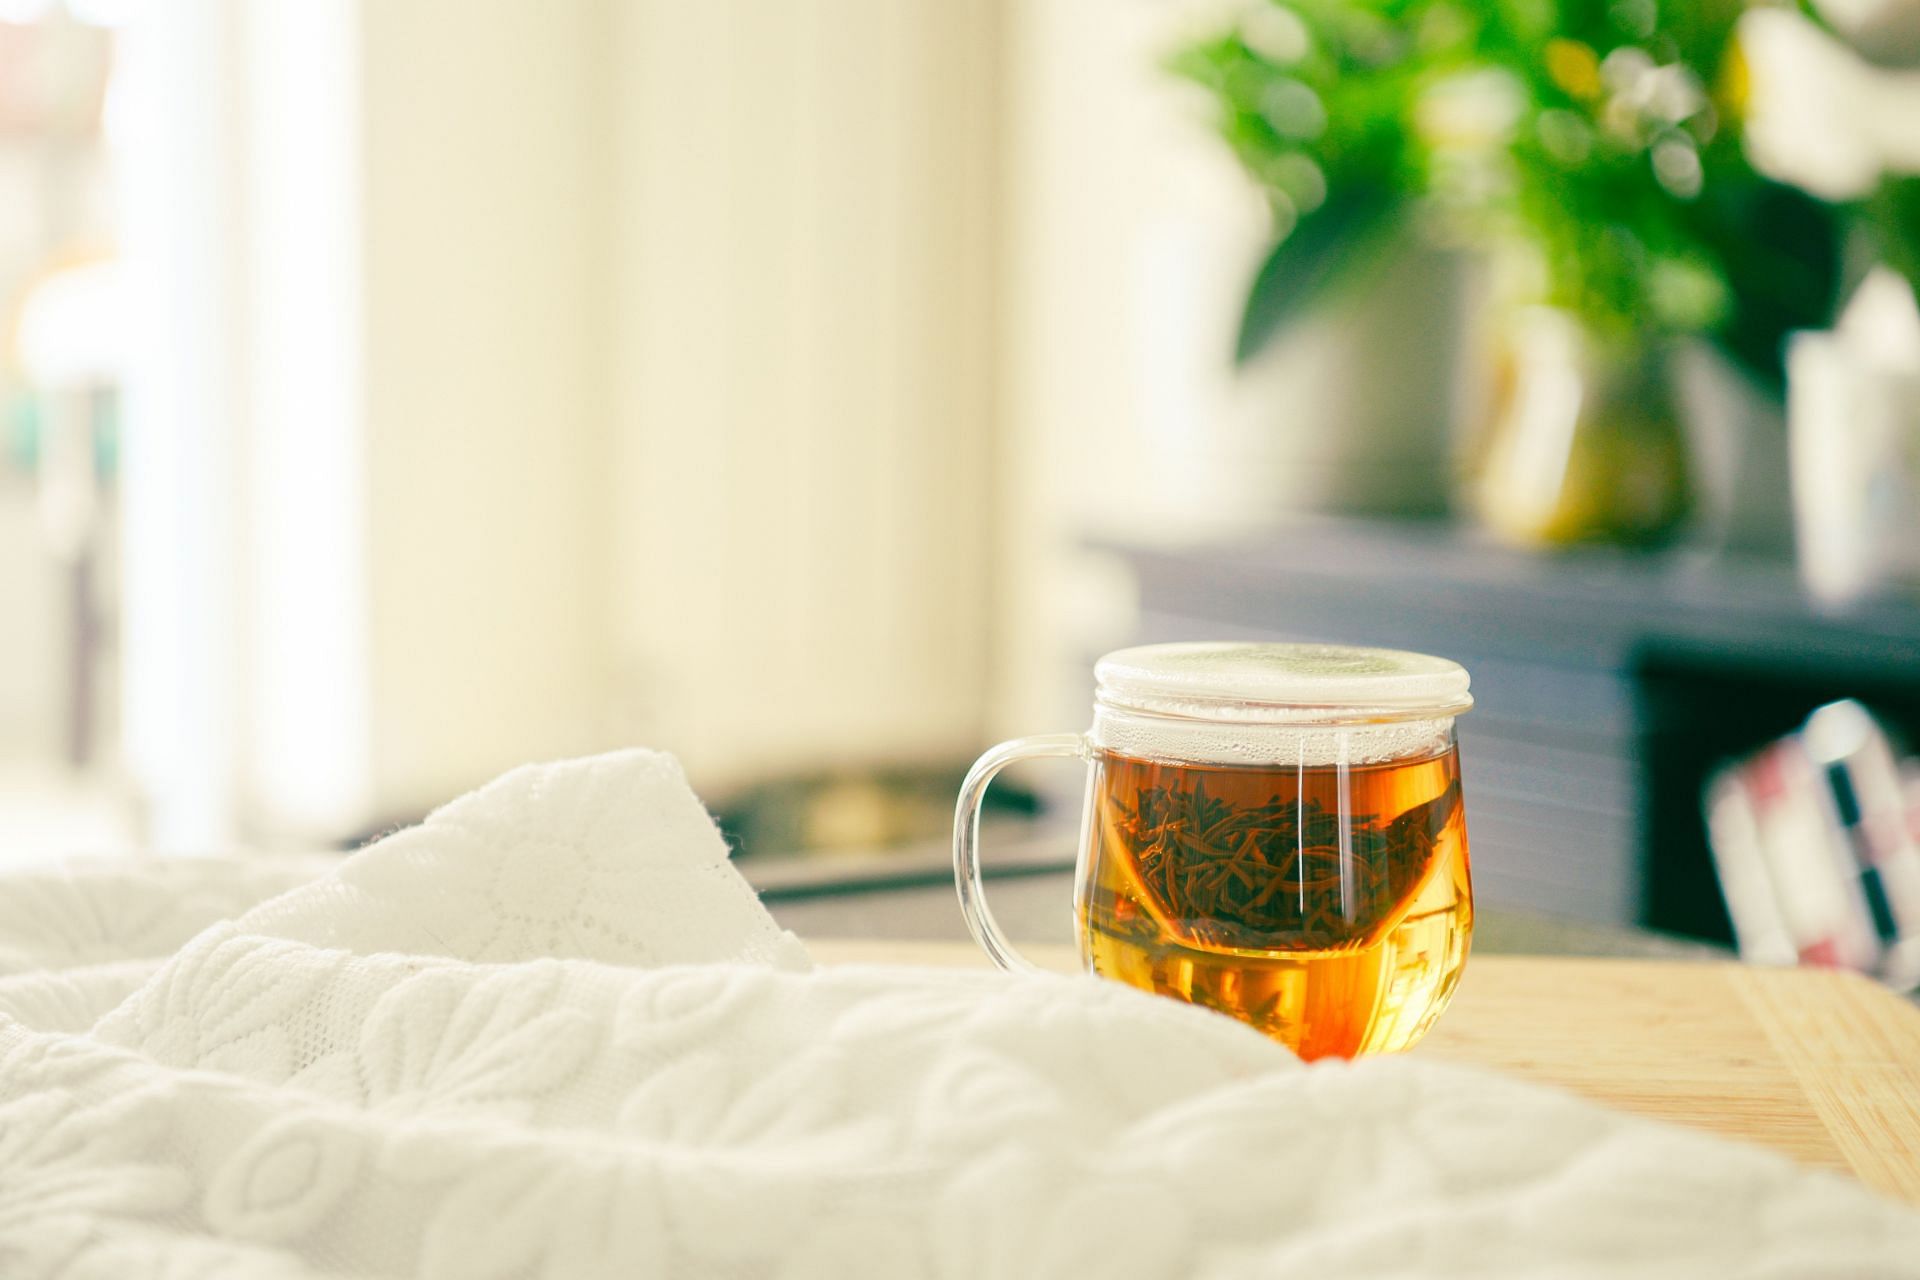 Benefits of jasmine tea- It boosts immunity. (Image via Pexels/ Suki Lee)